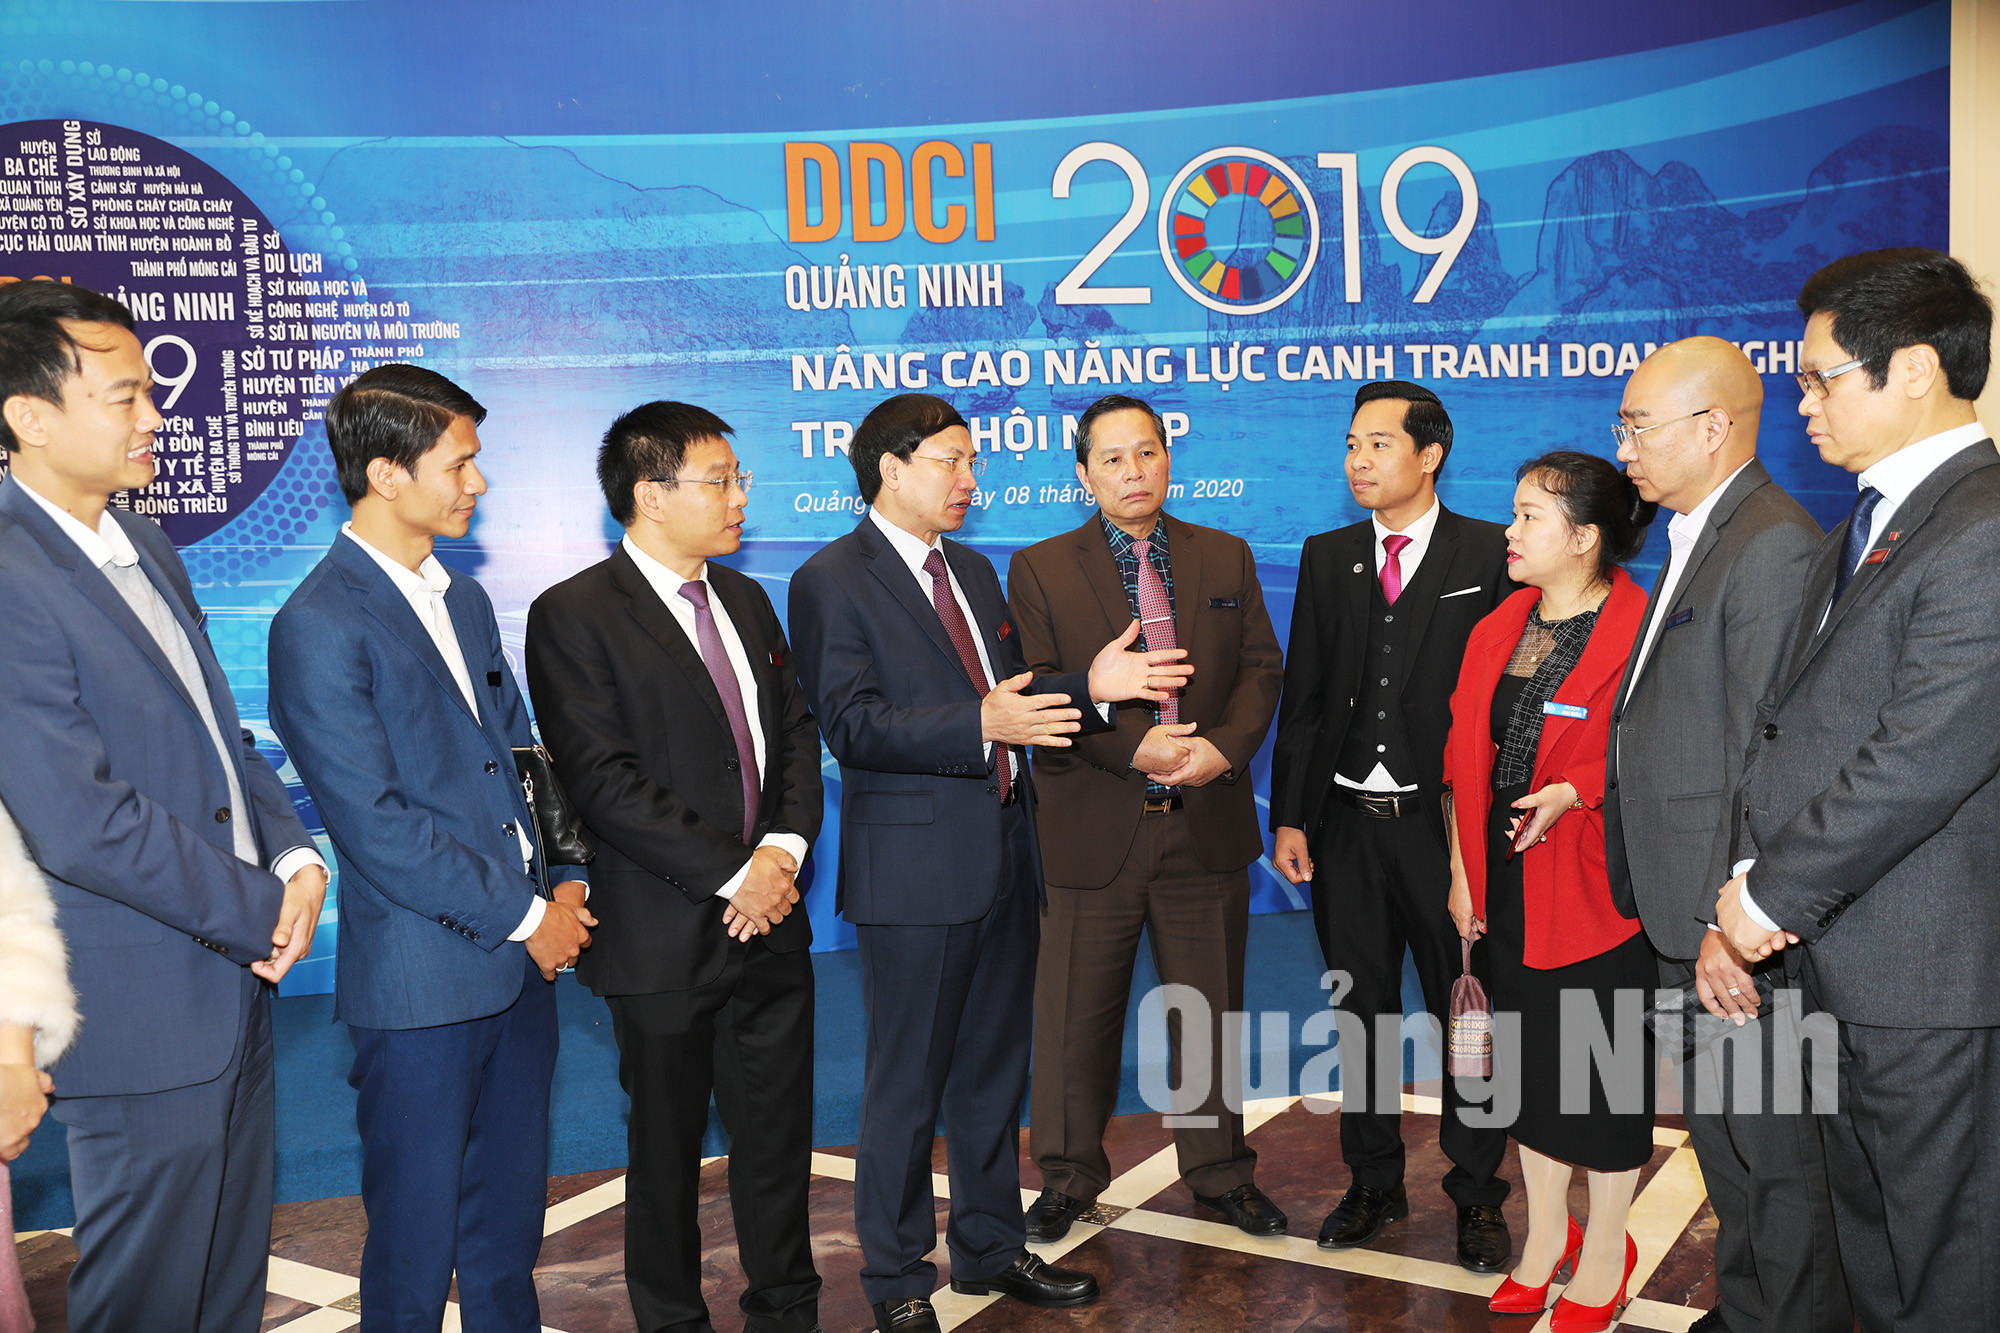 Lãnh đạo tỉnh Quảng Ninh trò chuyện với doanh nghiệp bên lề lễ công bố DDIC 2019 (2-2020). Ảnh: Đỗ Phương